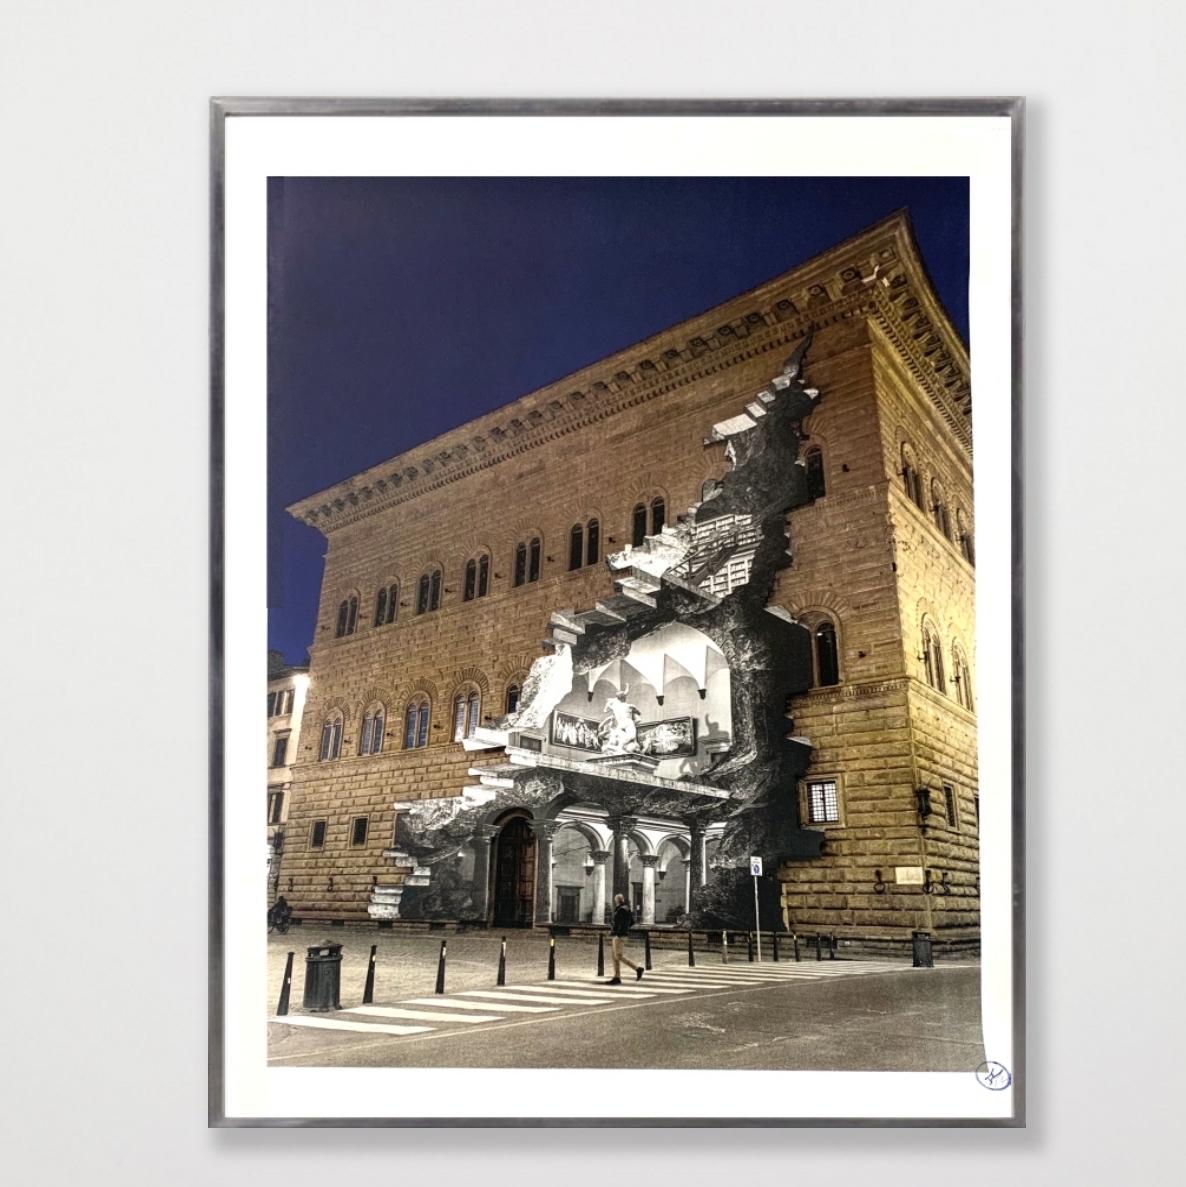 La Ferita, 25. März 2021, 19H07, Palazzo Strozzi, Florenz, Italien, 2021 (Schwarz), Figurative Print, von JR artist